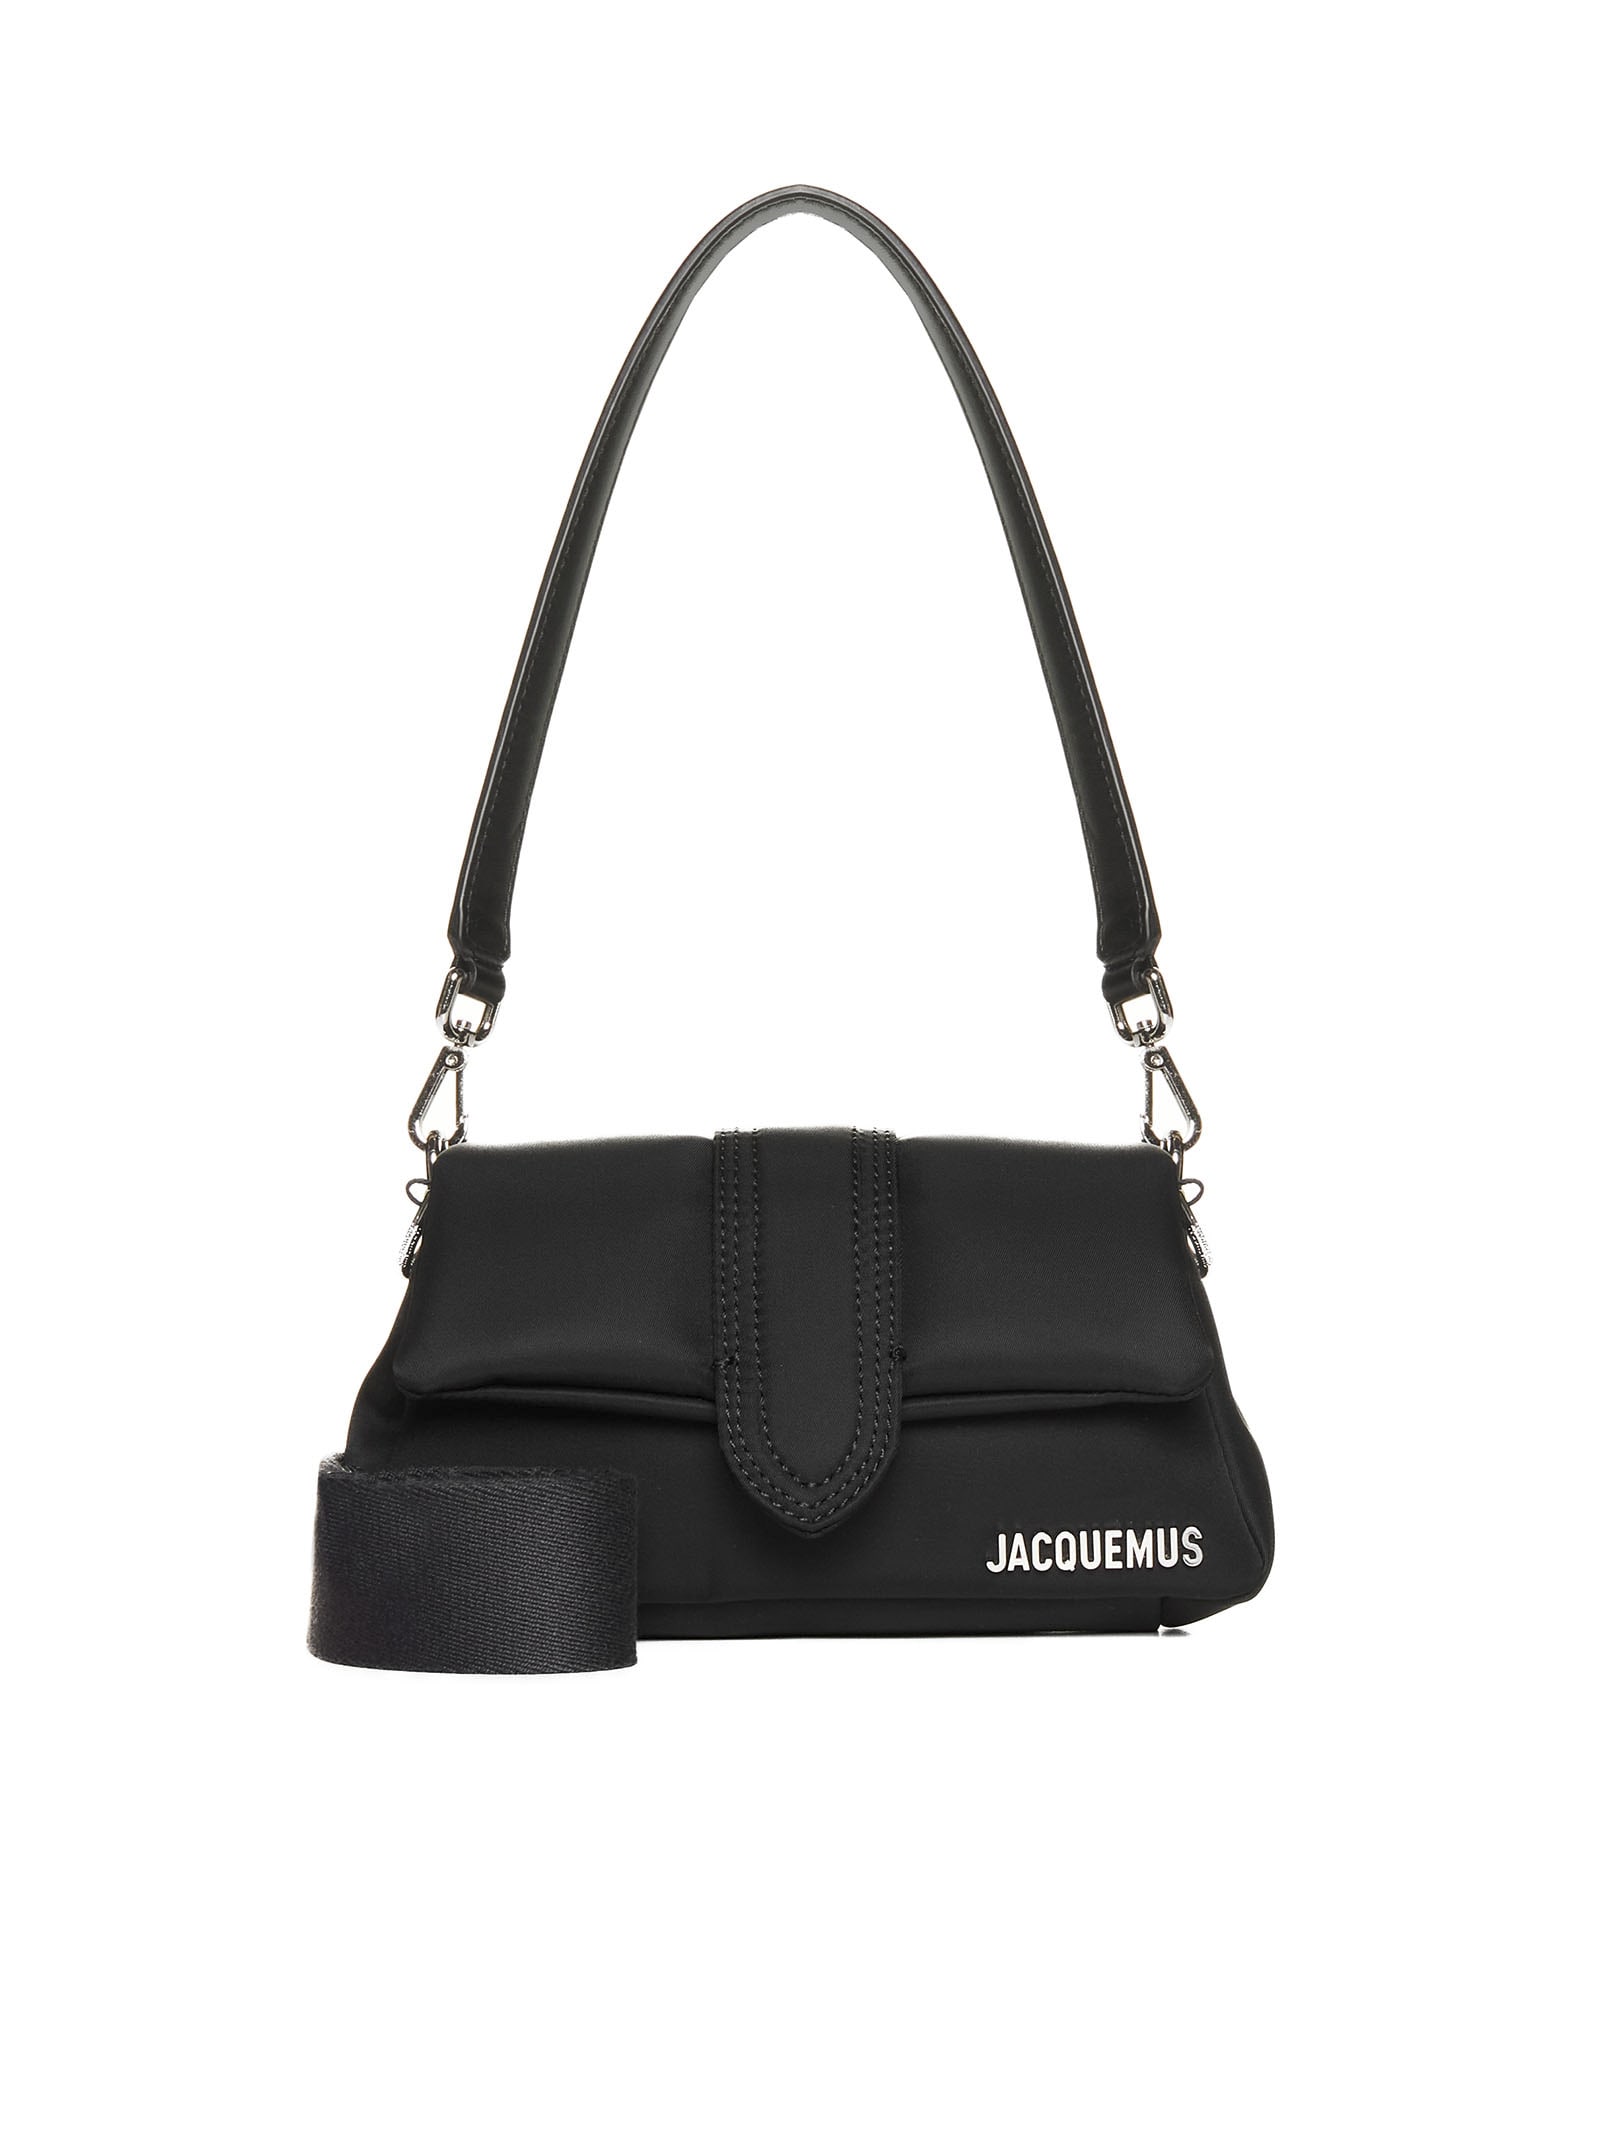 Jacquemus Shoulder Bag In Black